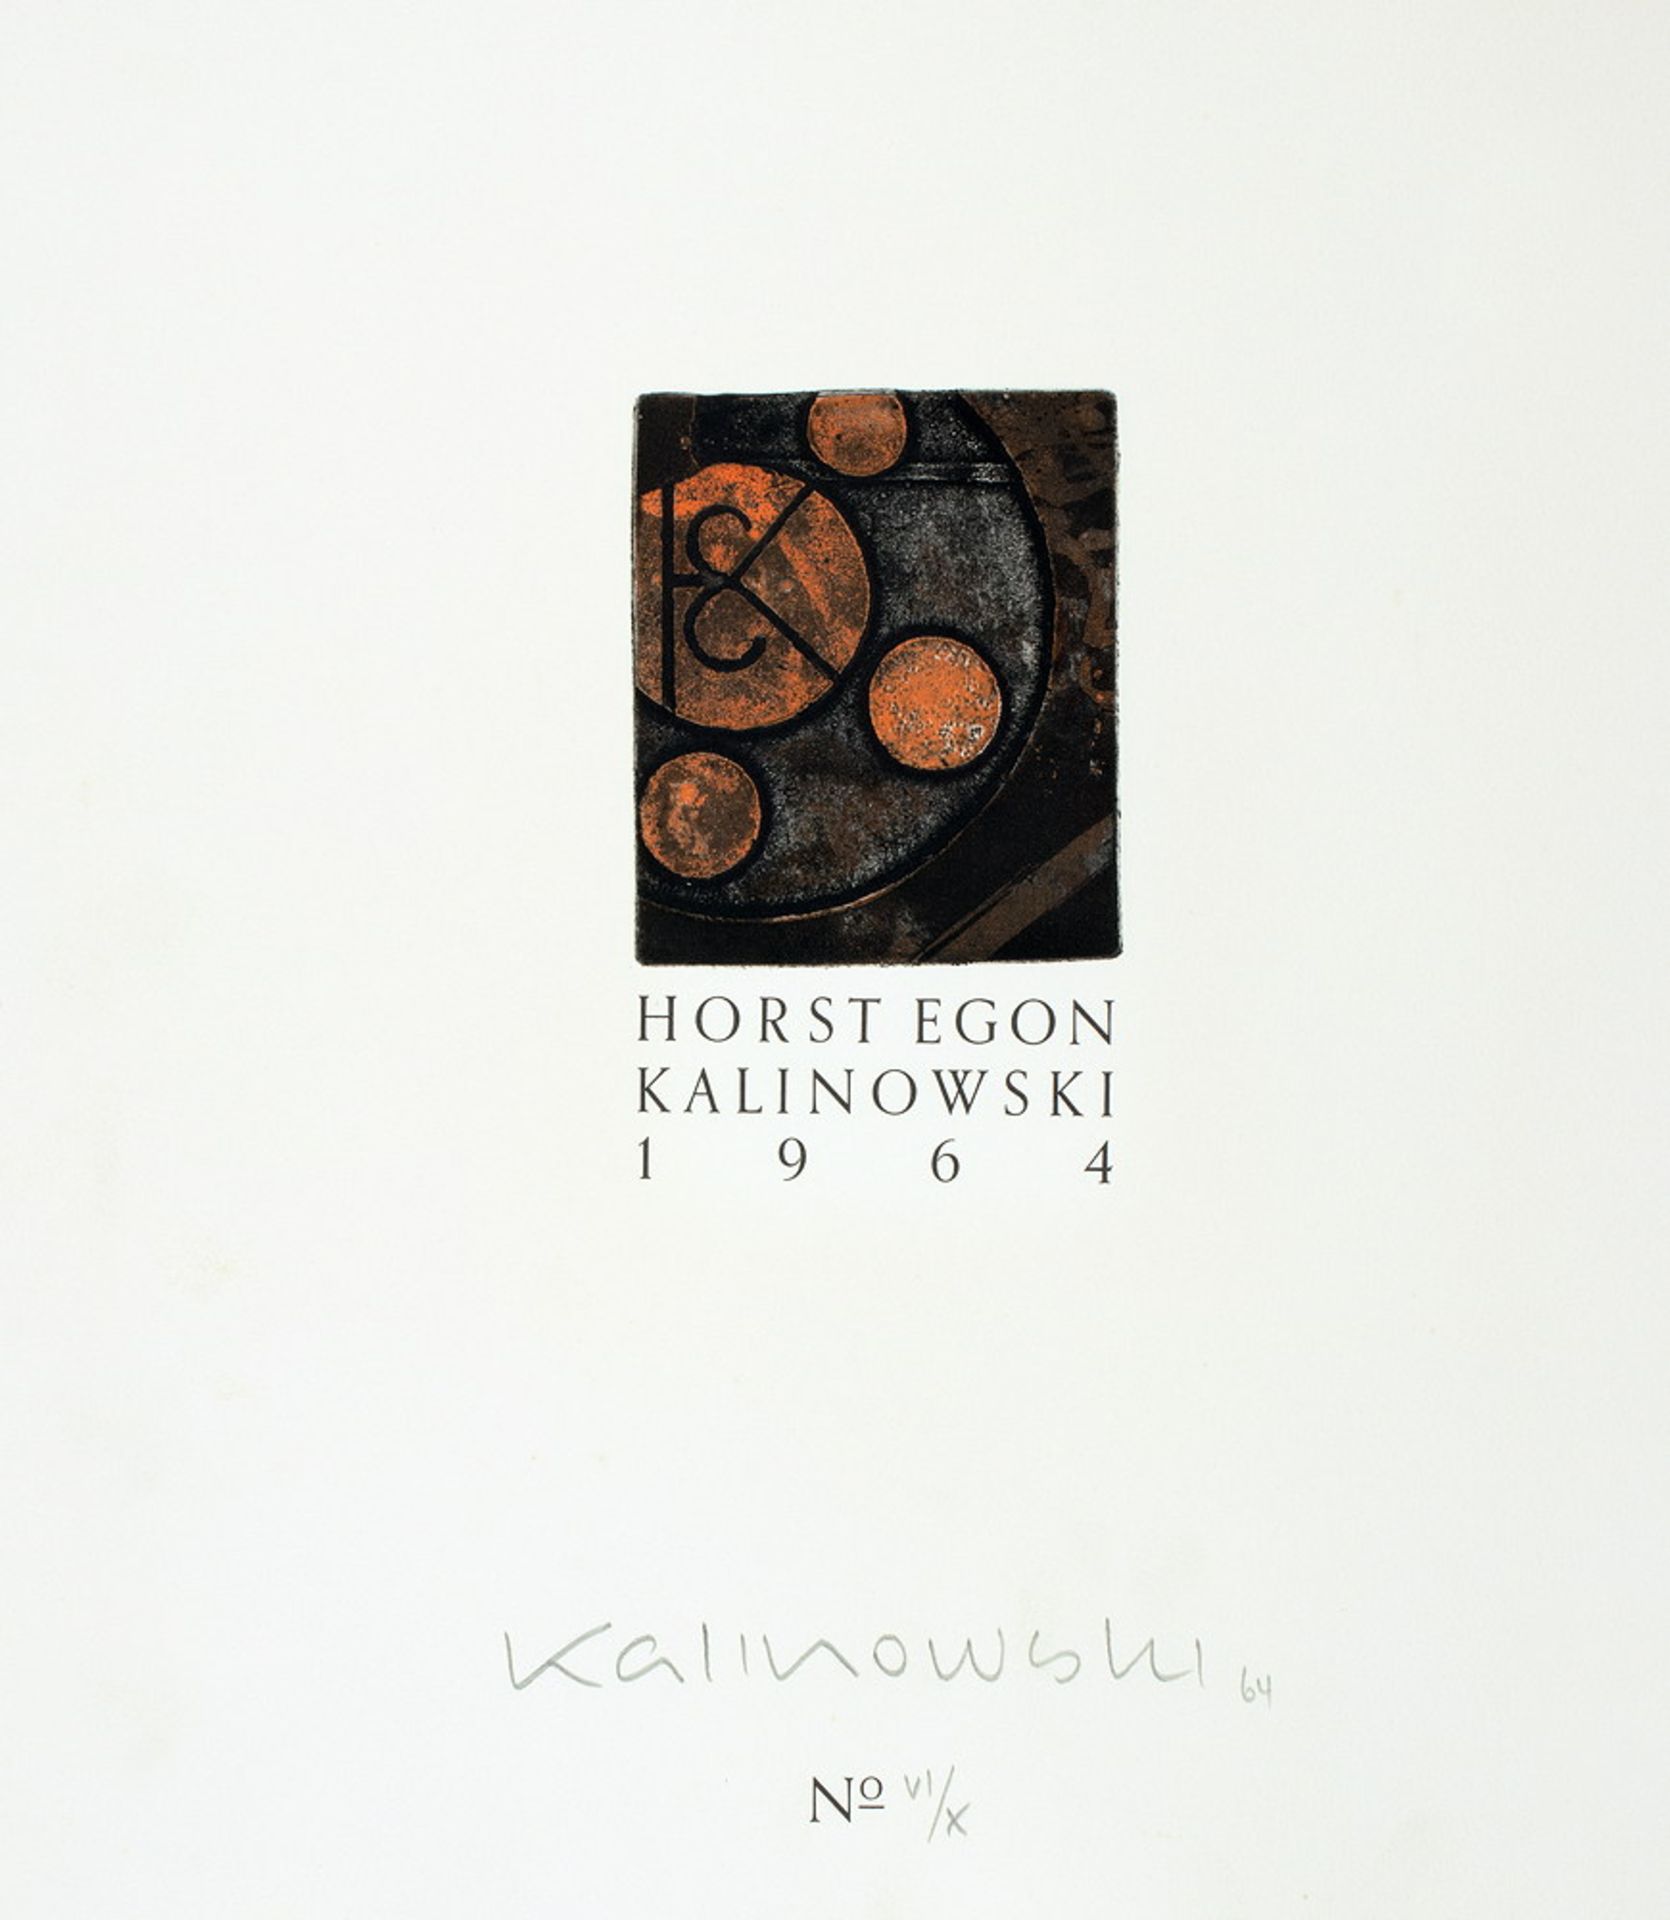 Horst Egon Kalinowski - Haiku. 12 übersetzte japanische Gedichte, illustriert. Hannover, Brusberg